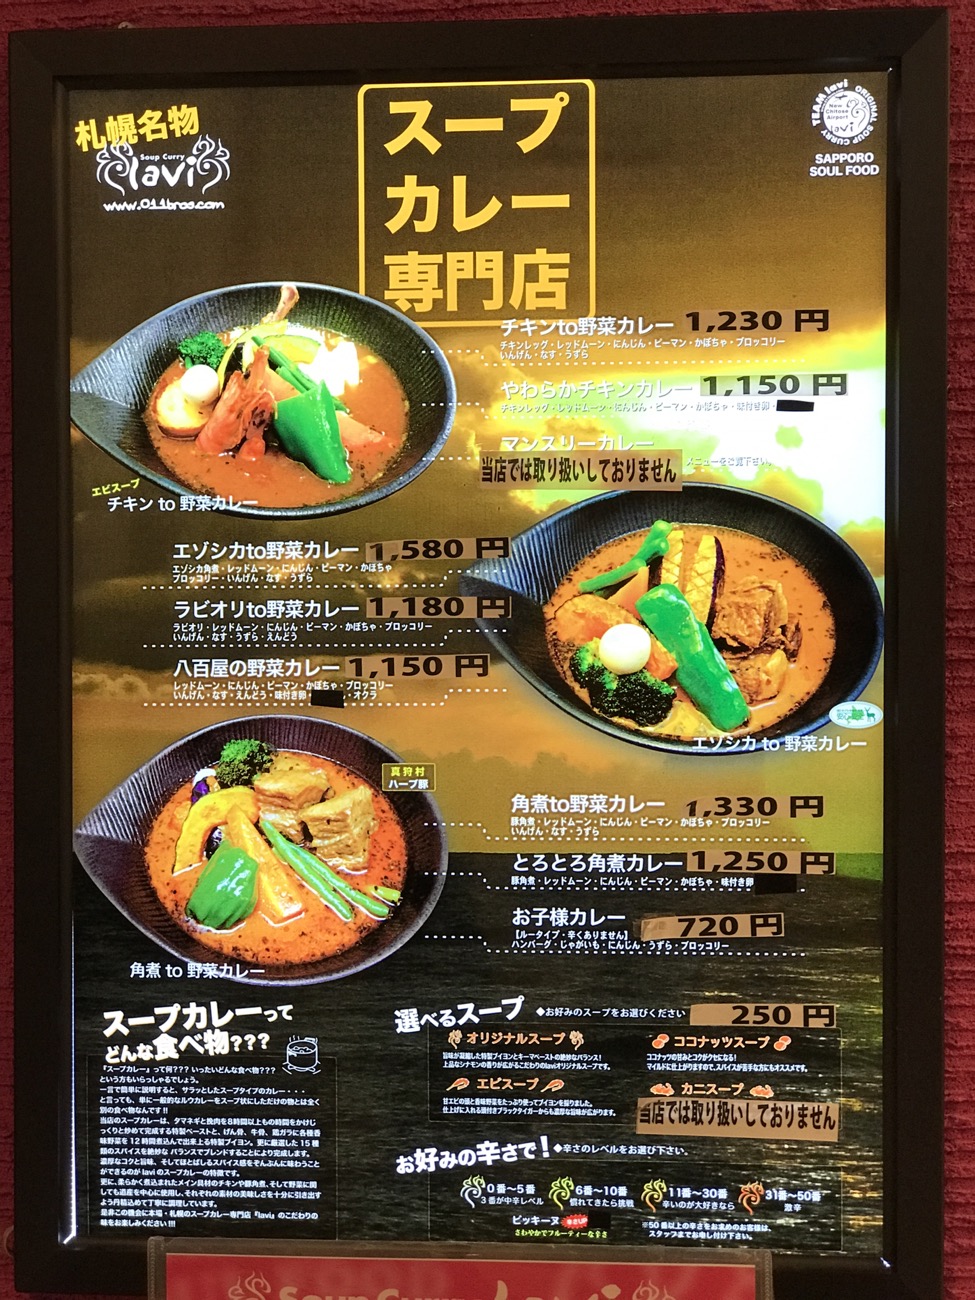 259円 【89%OFF!】 lavi ラヴィ スープカレー やわらかチキン